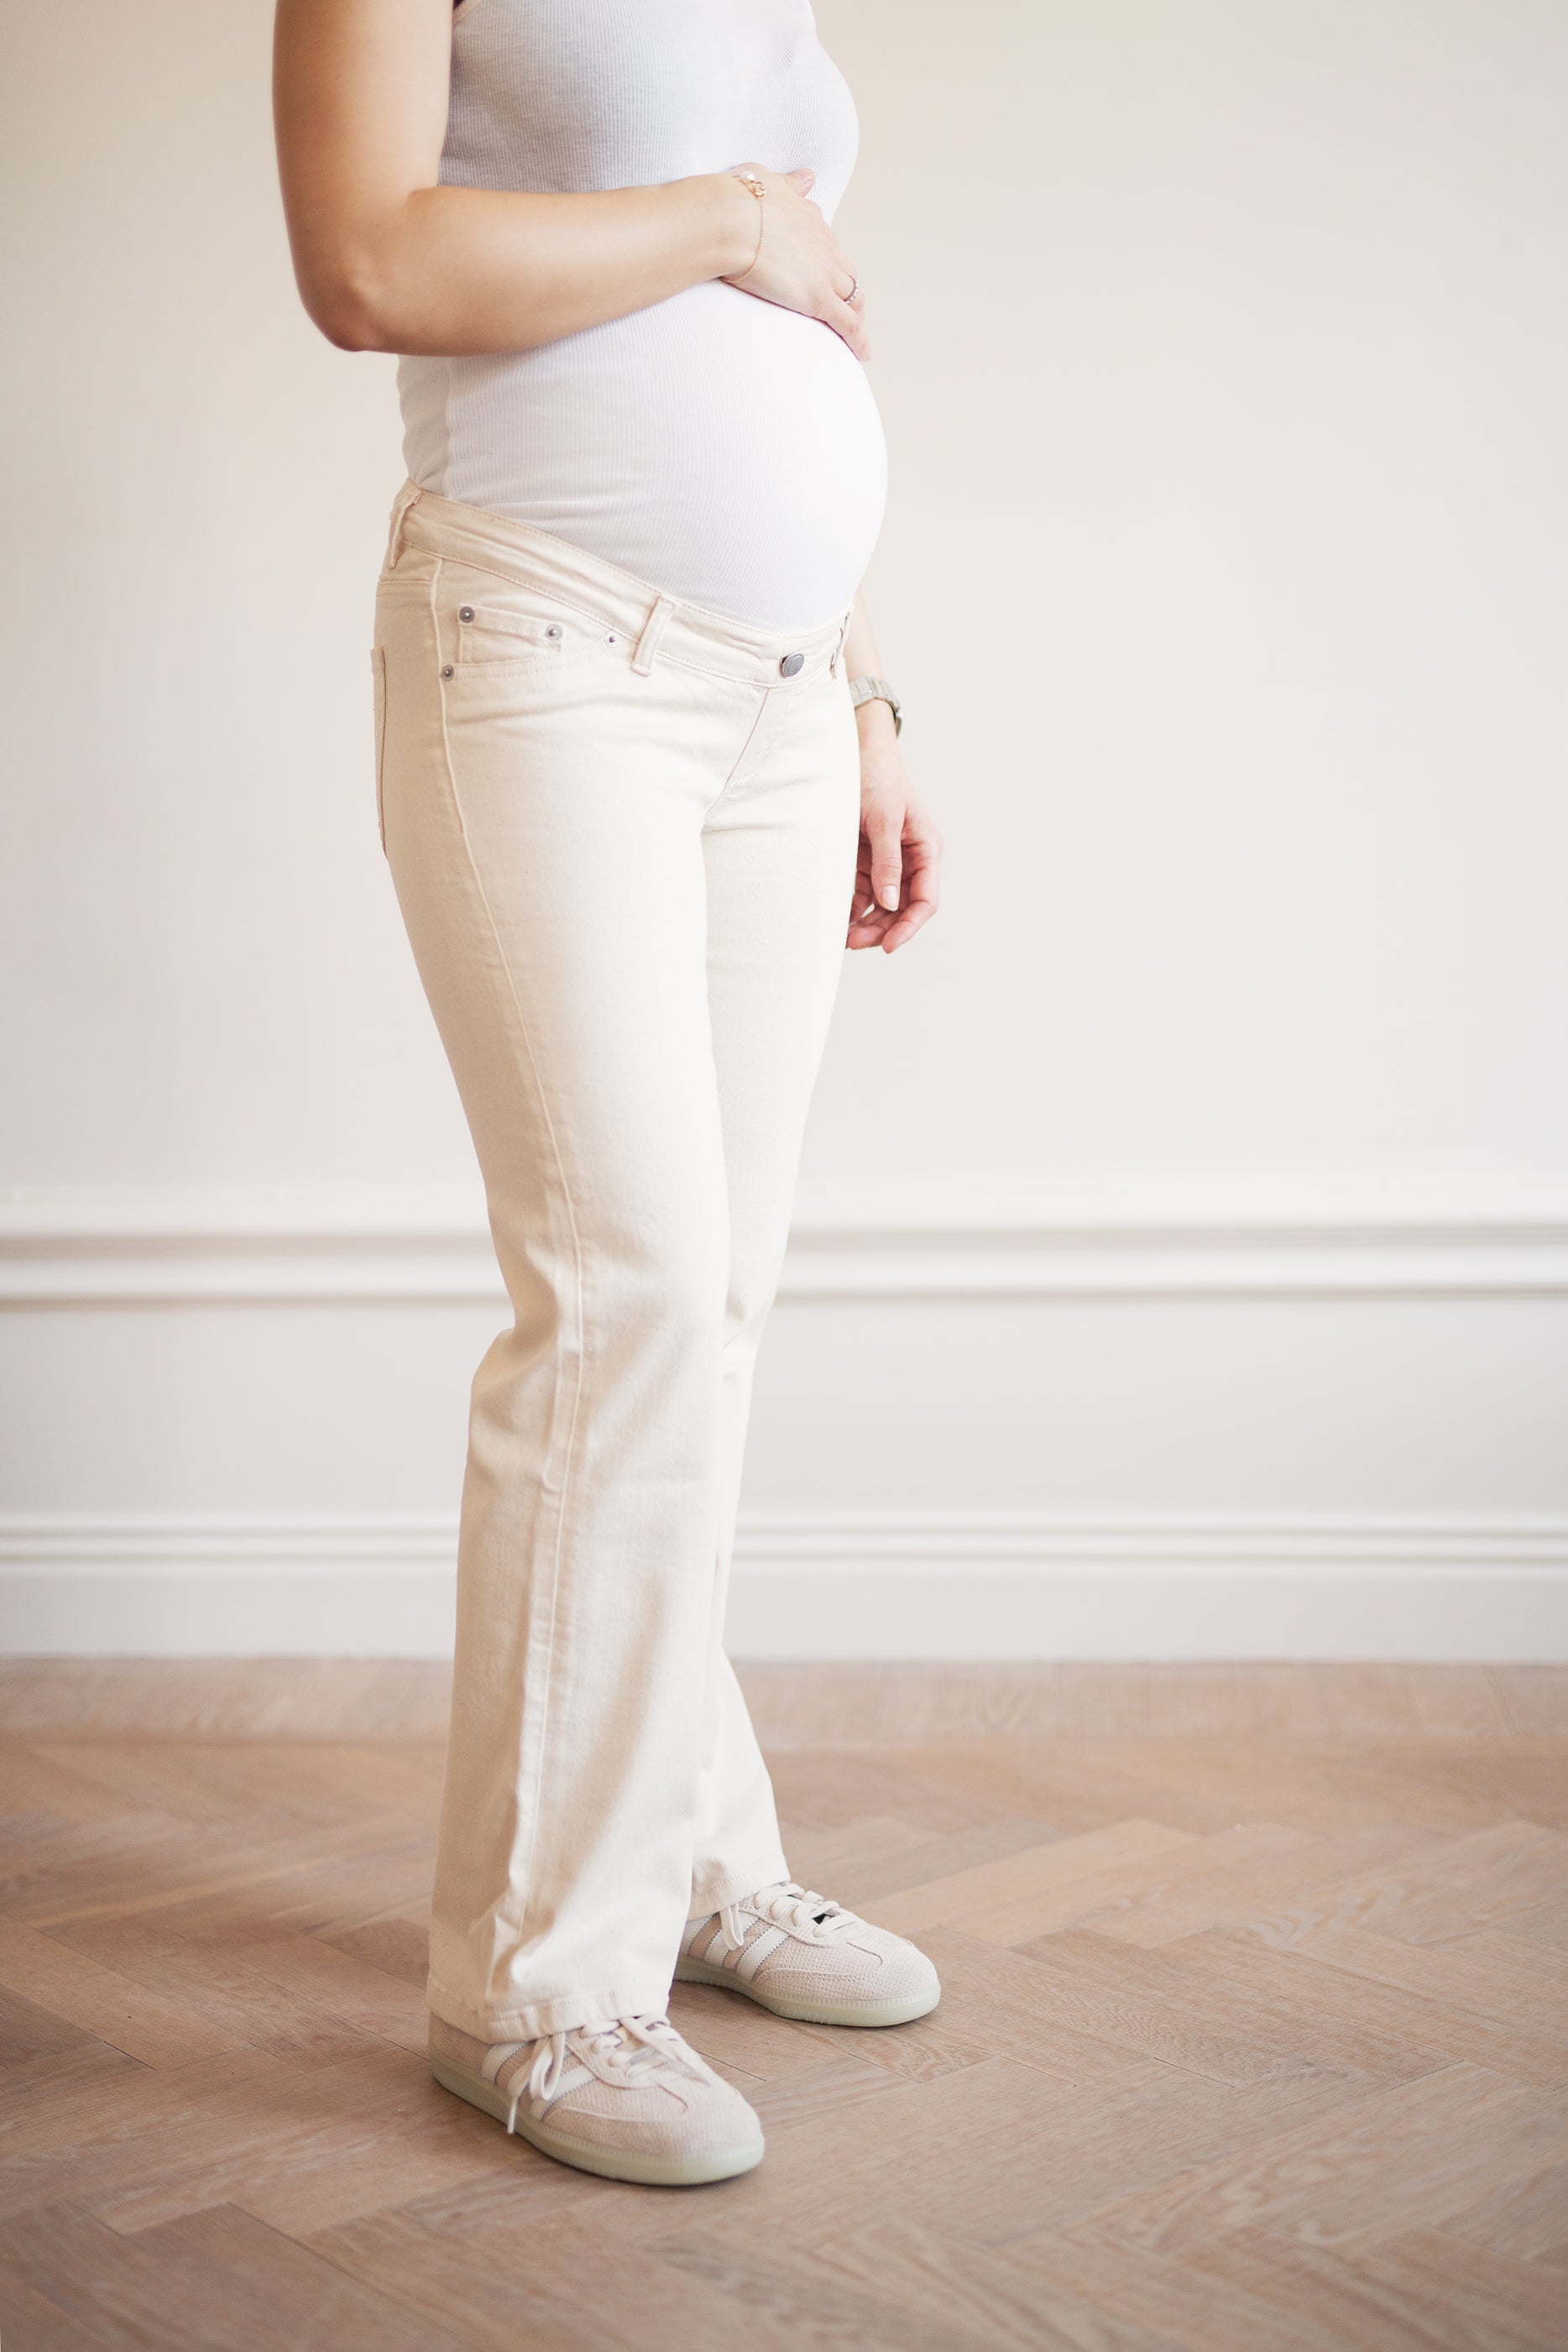 Buy ELEG & STILANCE Women's-Girls Cotton Blend Multipack Maternity